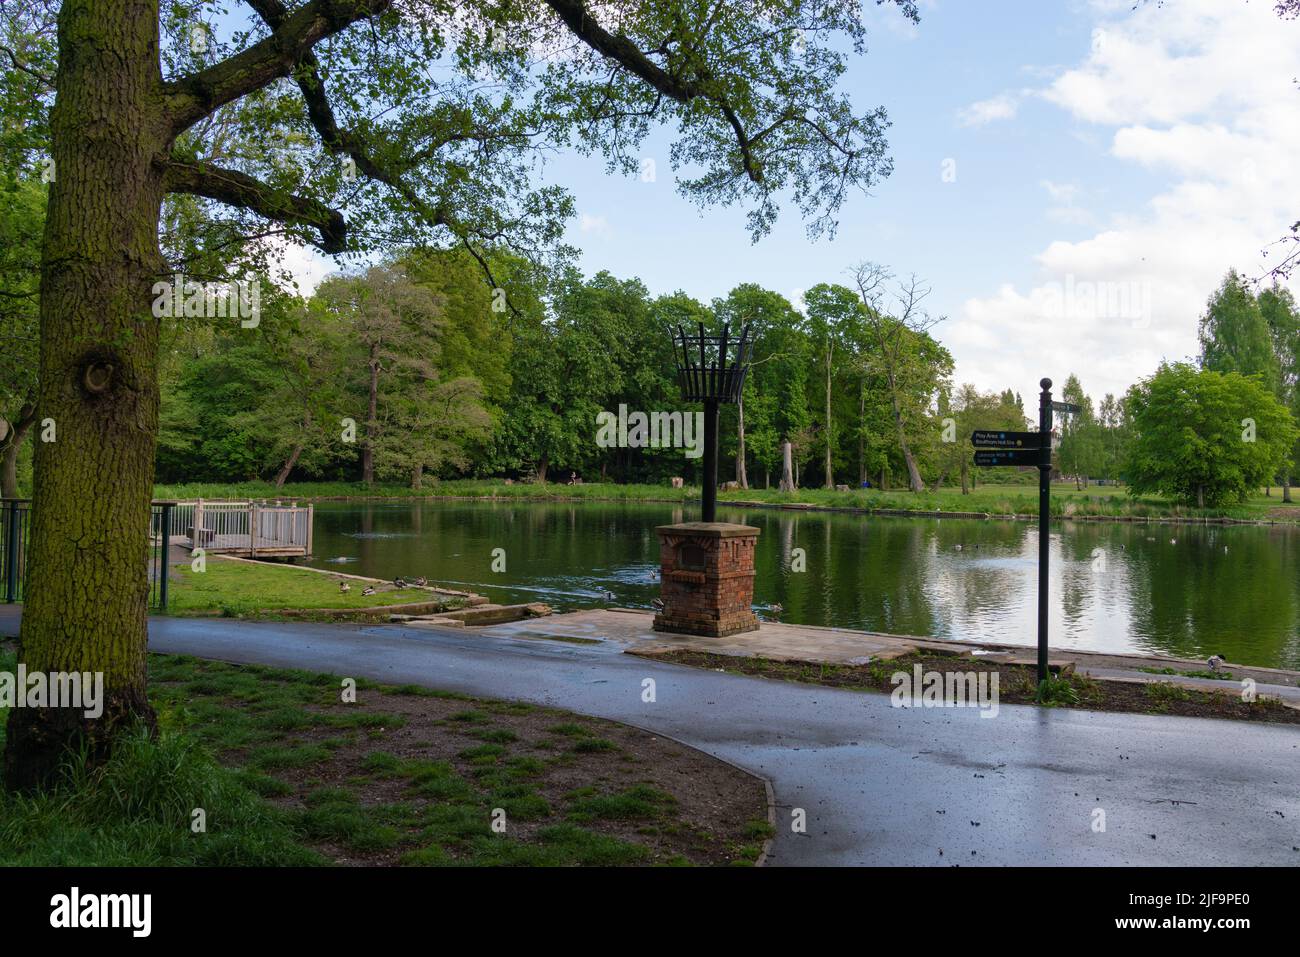 Boultham Park, Lincoln, ursprünglich der Park für die Boultham Hall, eröffnet als öffentlicher Park für die Menschen von Lincoln, Park Beacon, Beacon neben See. Stockfoto